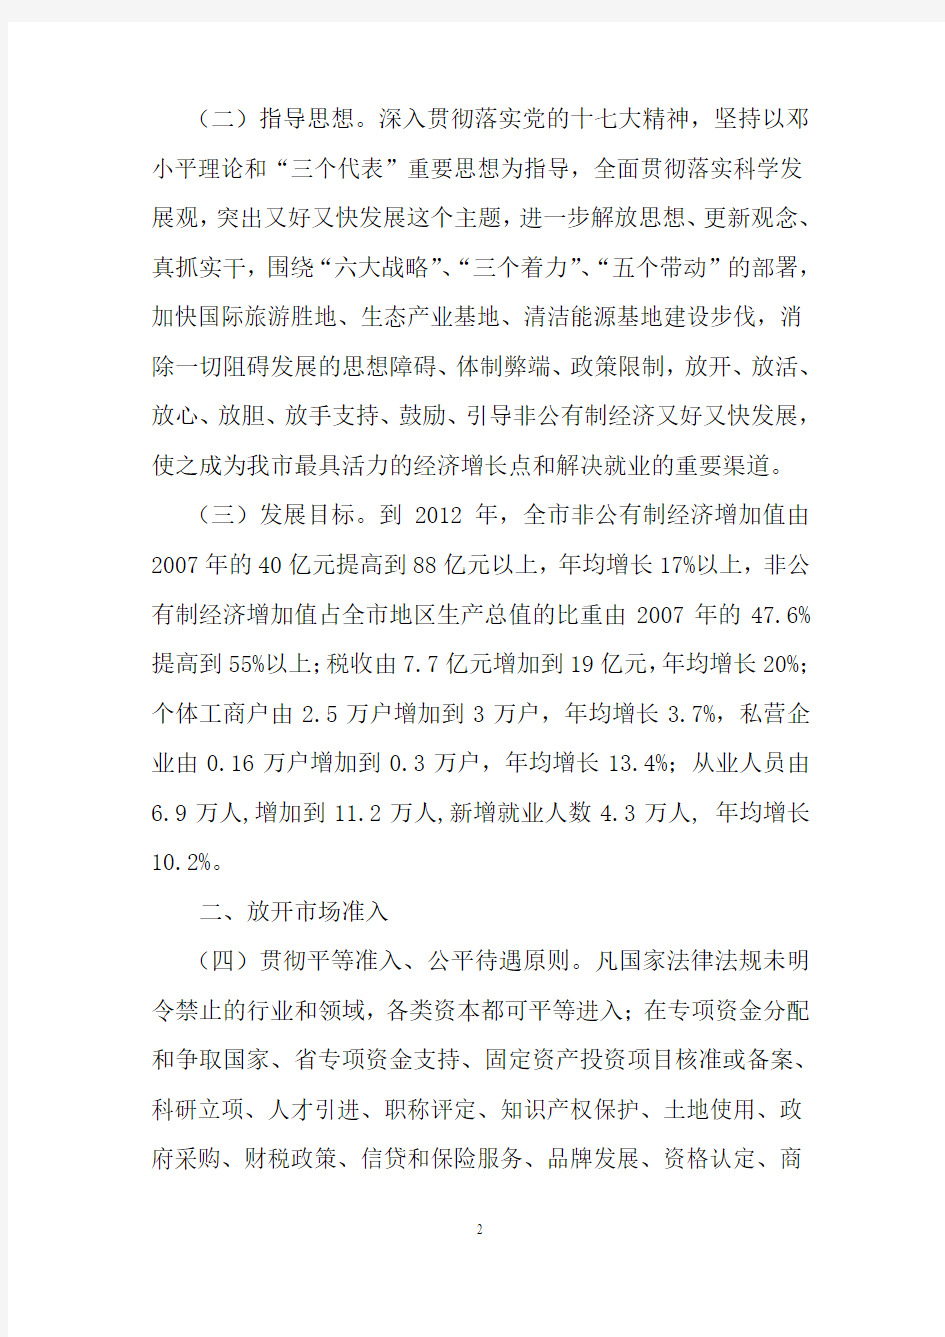 丽江市委、市政府关于加快非公经济发展的实施意见